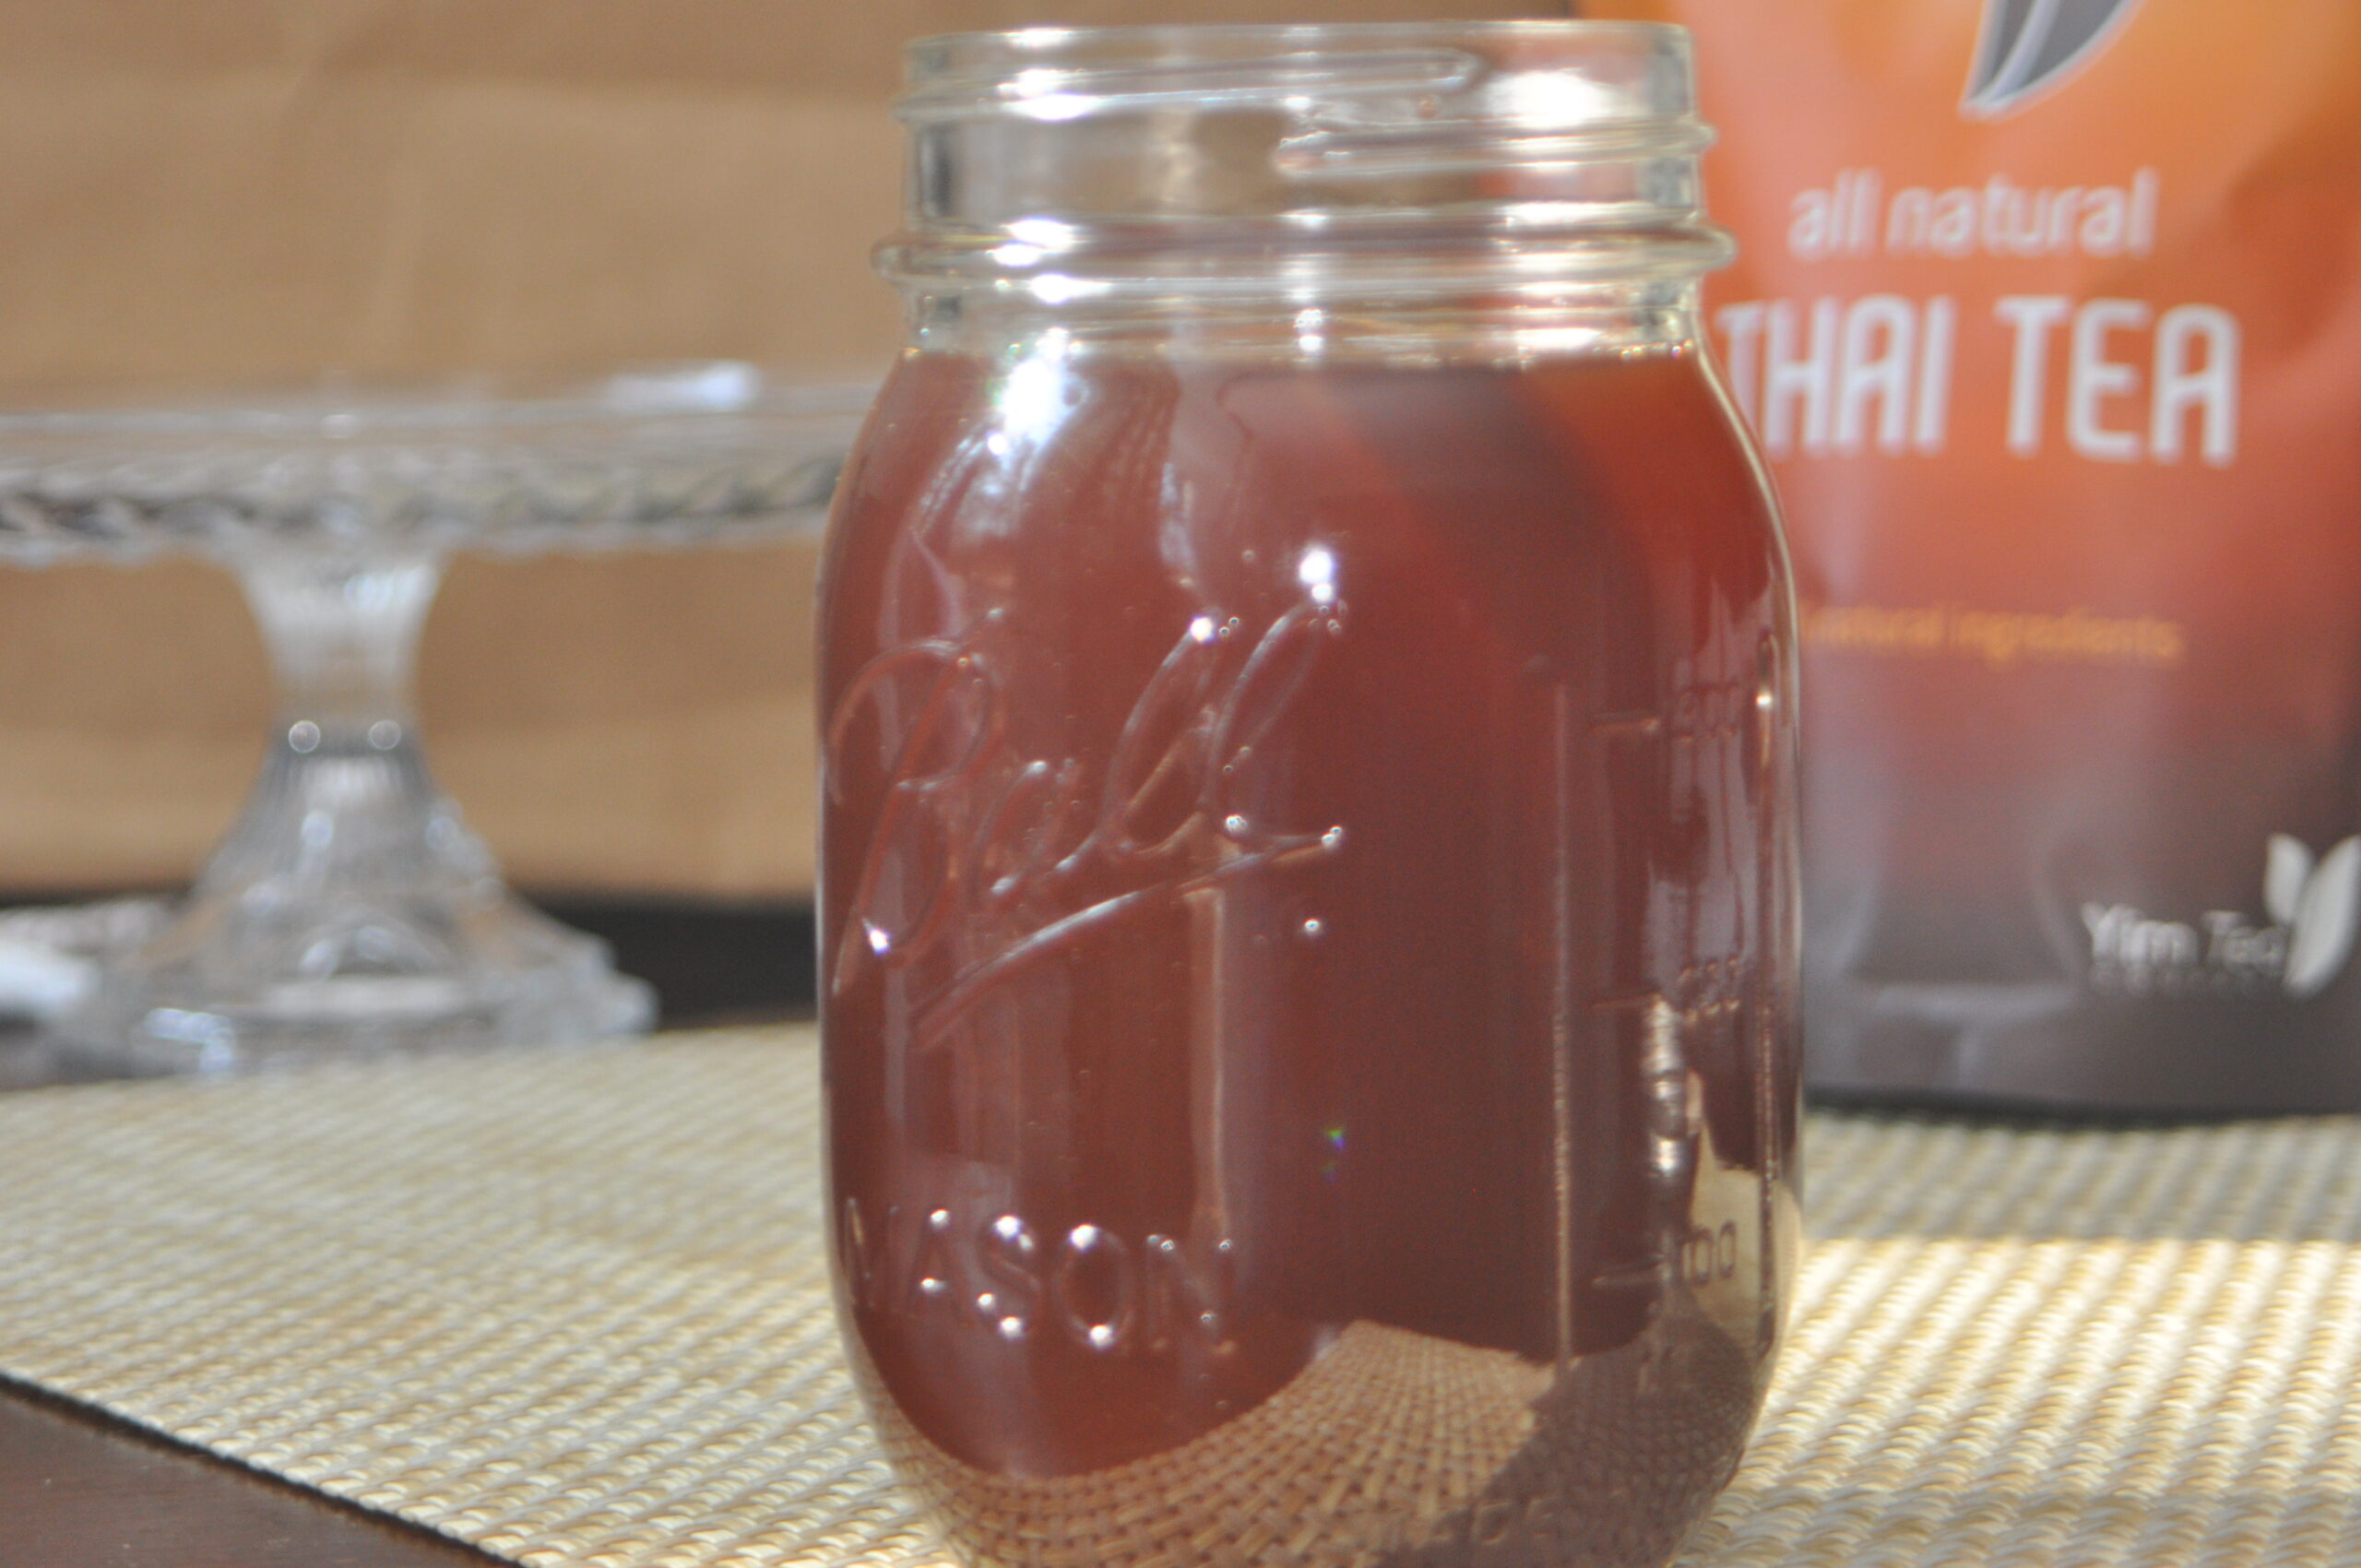 thai tea in a jar.